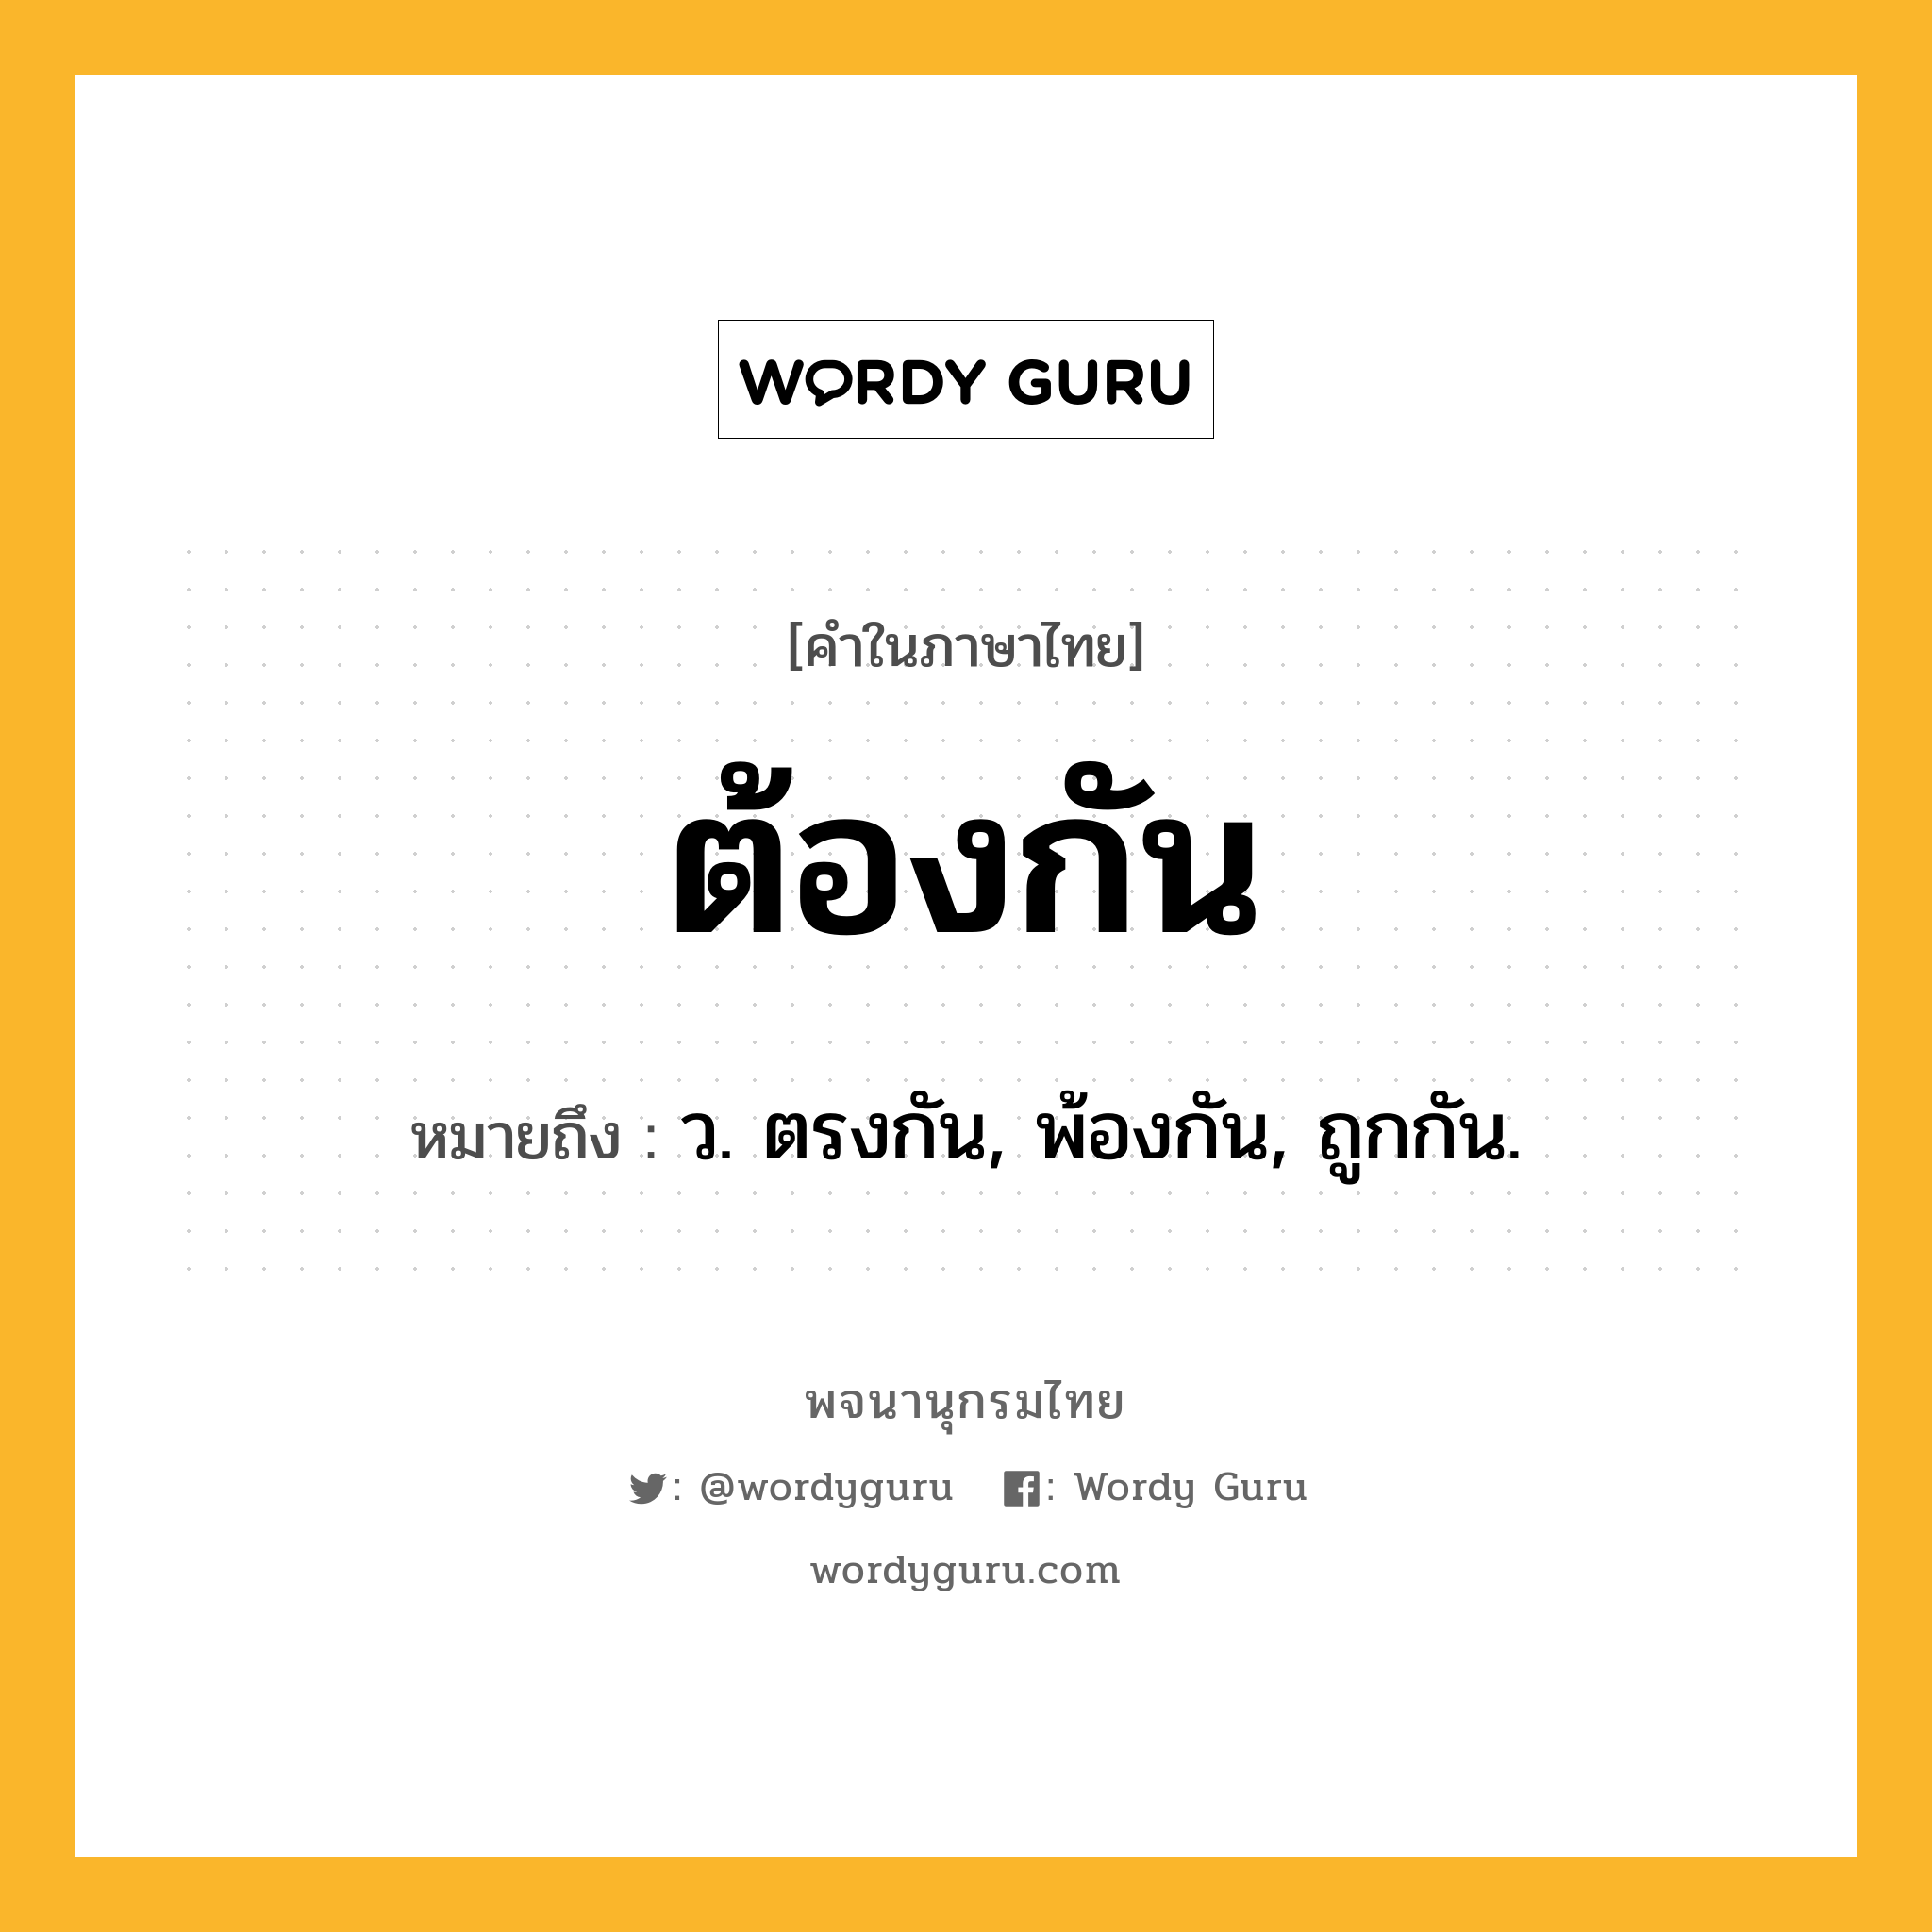 ต้องกัน ความหมาย หมายถึงอะไร?, คำในภาษาไทย ต้องกัน หมายถึง ว. ตรงกัน, พ้องกัน, ถูกกัน.